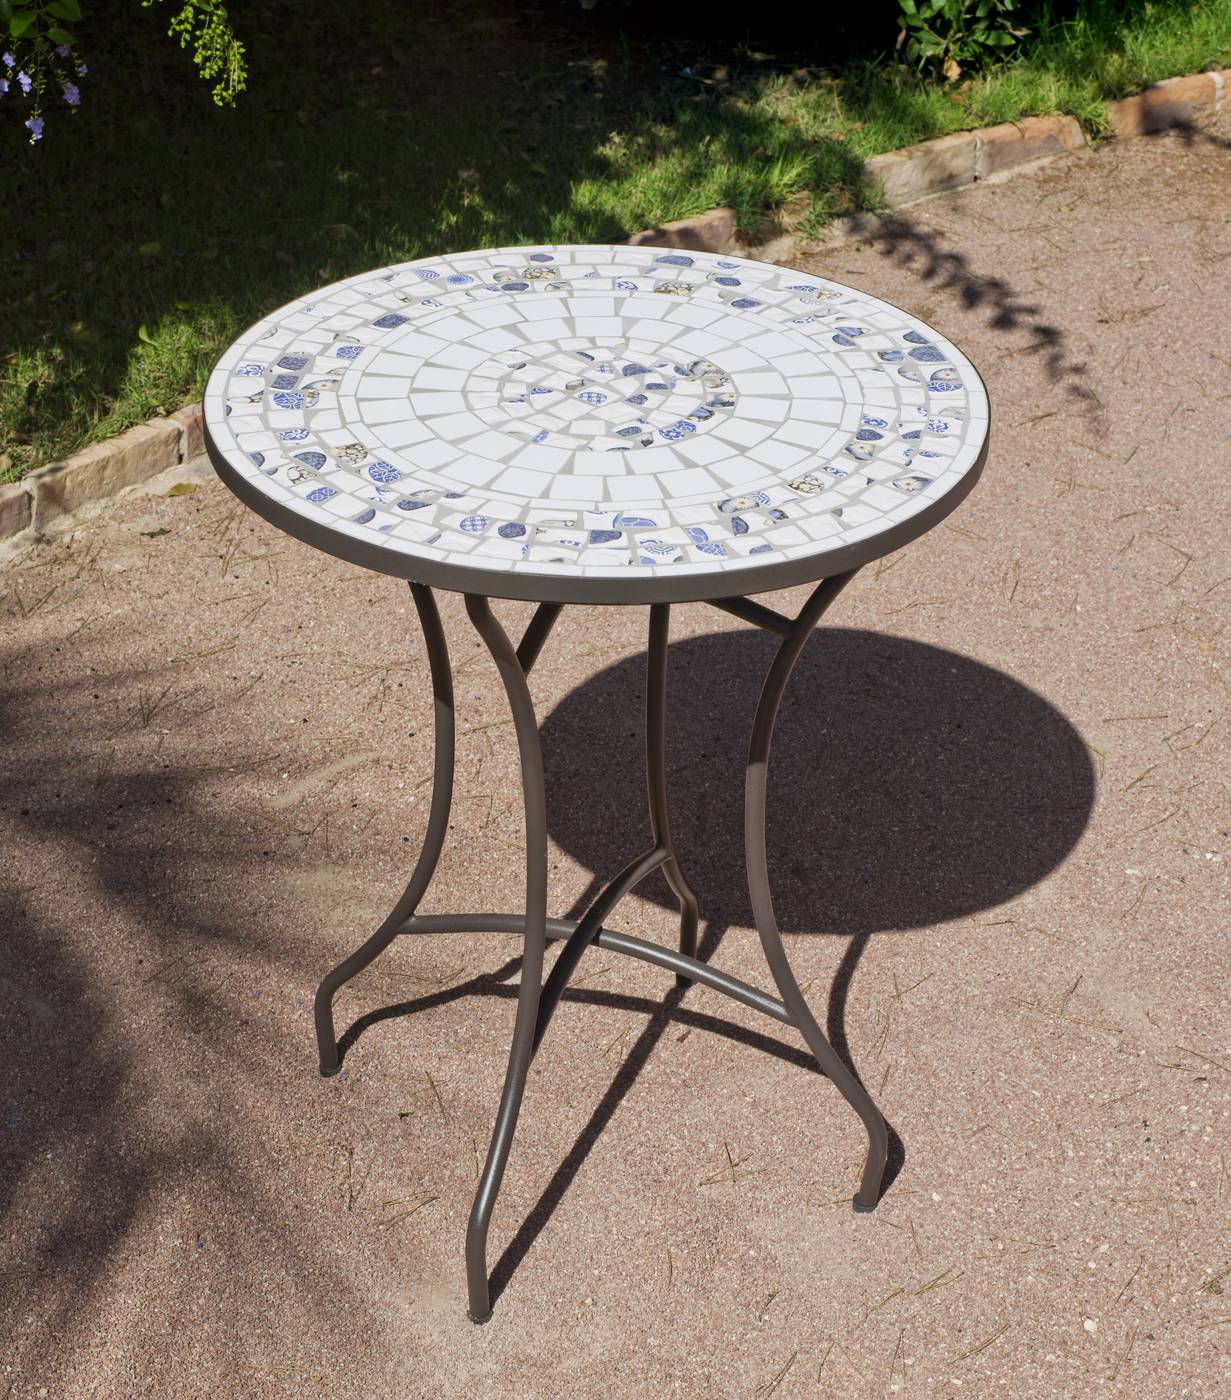 Set Mosaico Rexi-Brasil - Conjunto de acero color bronce: mesa redonda de acero forjado con tablero mosaico de 60 cm. + 2 sillones apilables de wicker reforzado